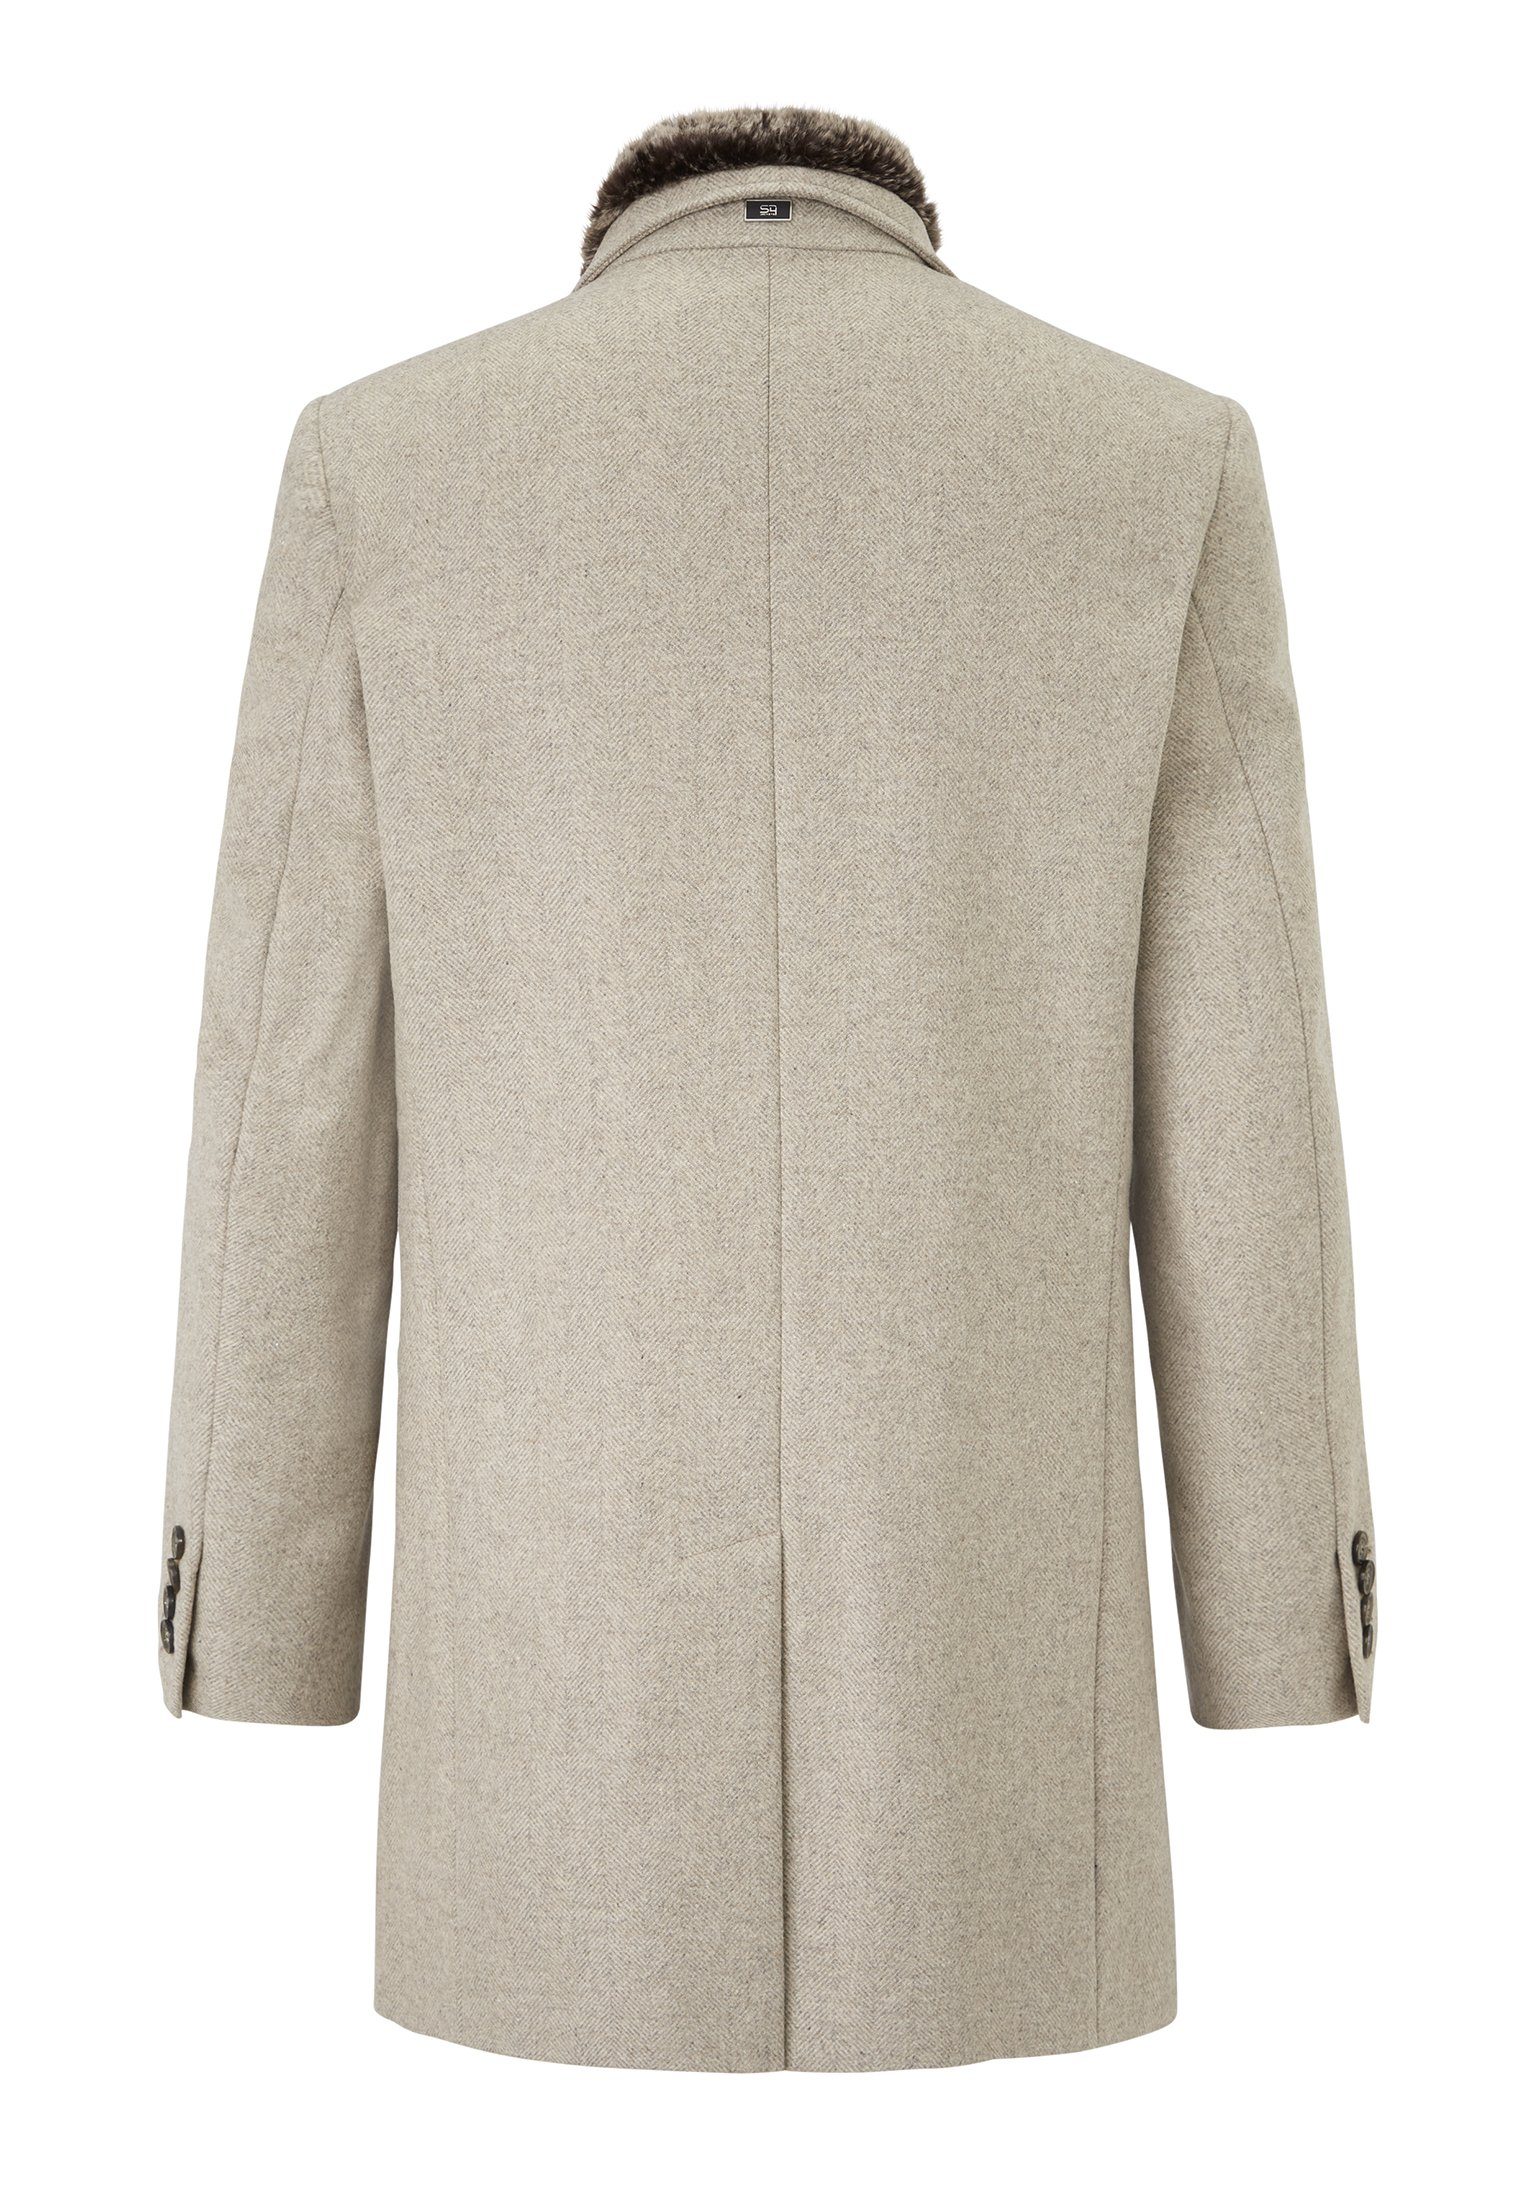 Fit Tailored Jackets Newton Wollmantel italienischer W Wolle Wollmantel S4 mit